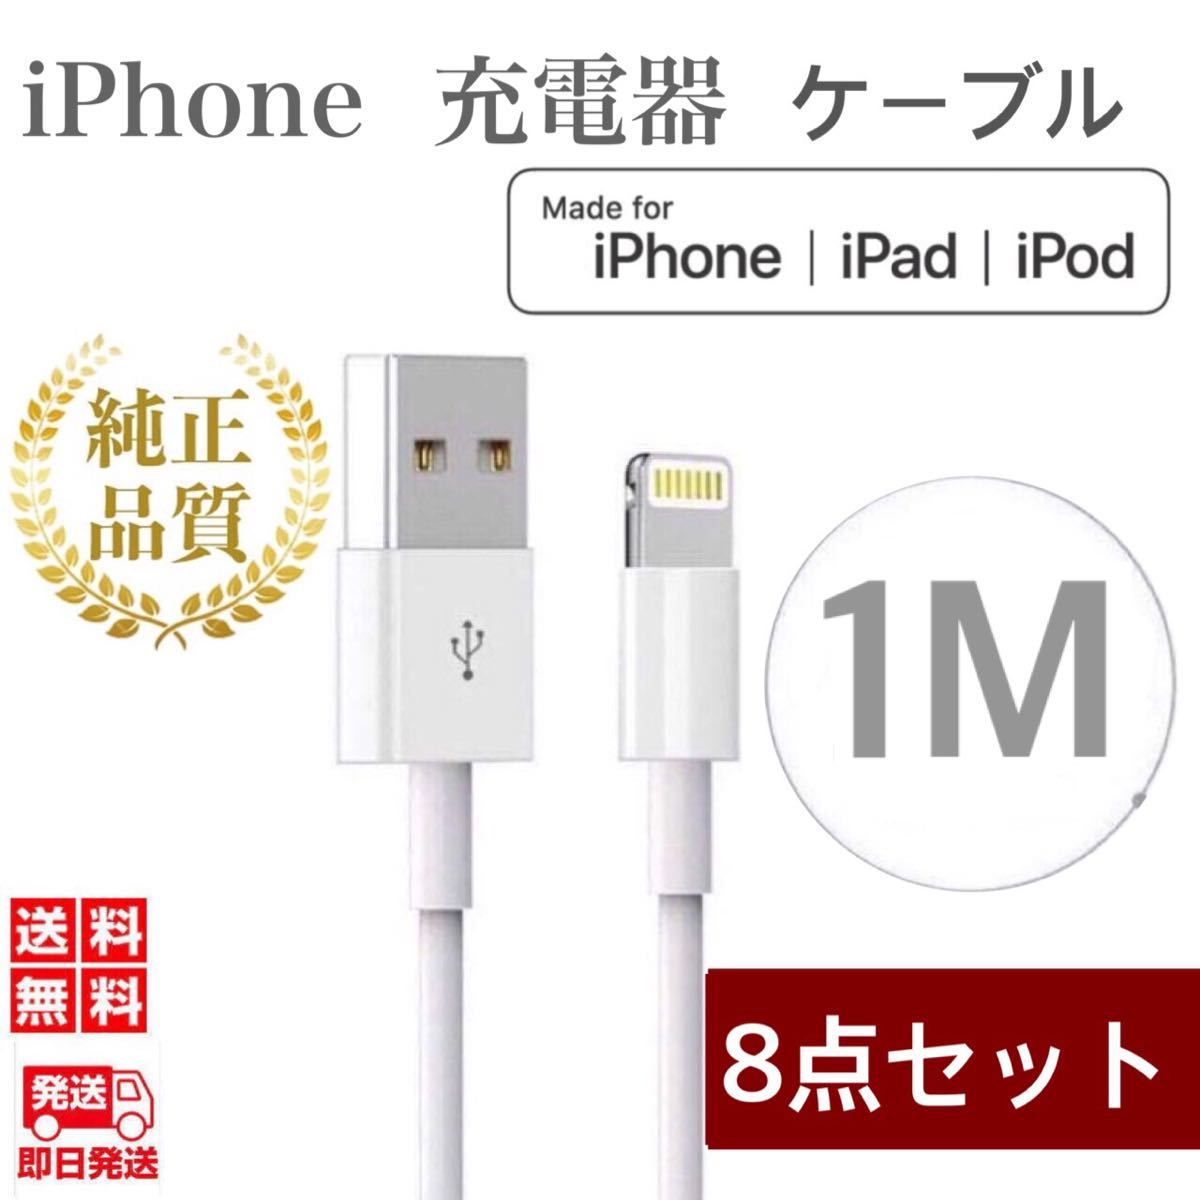 ギフト/プレゼント/ご褒美] 新品 iPhone ライトニングケーブル 2本 1m USB 充電器 純正品質